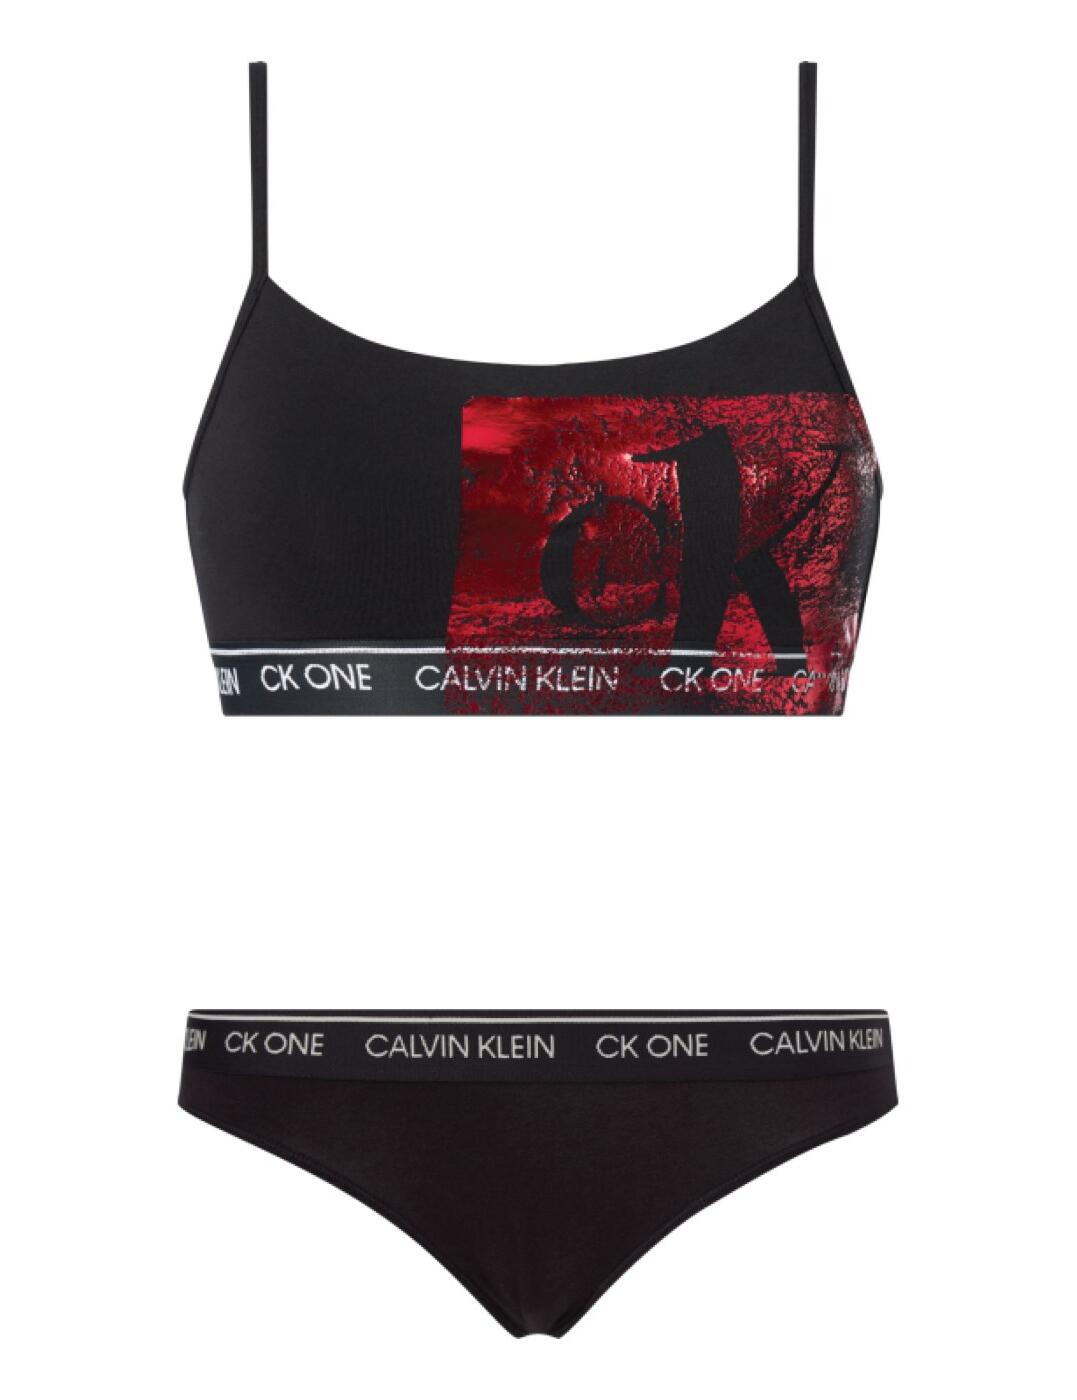 000QF6329E Calvin Klein CK One Bralette and Brief Set - QF6329E Black/Red Foil